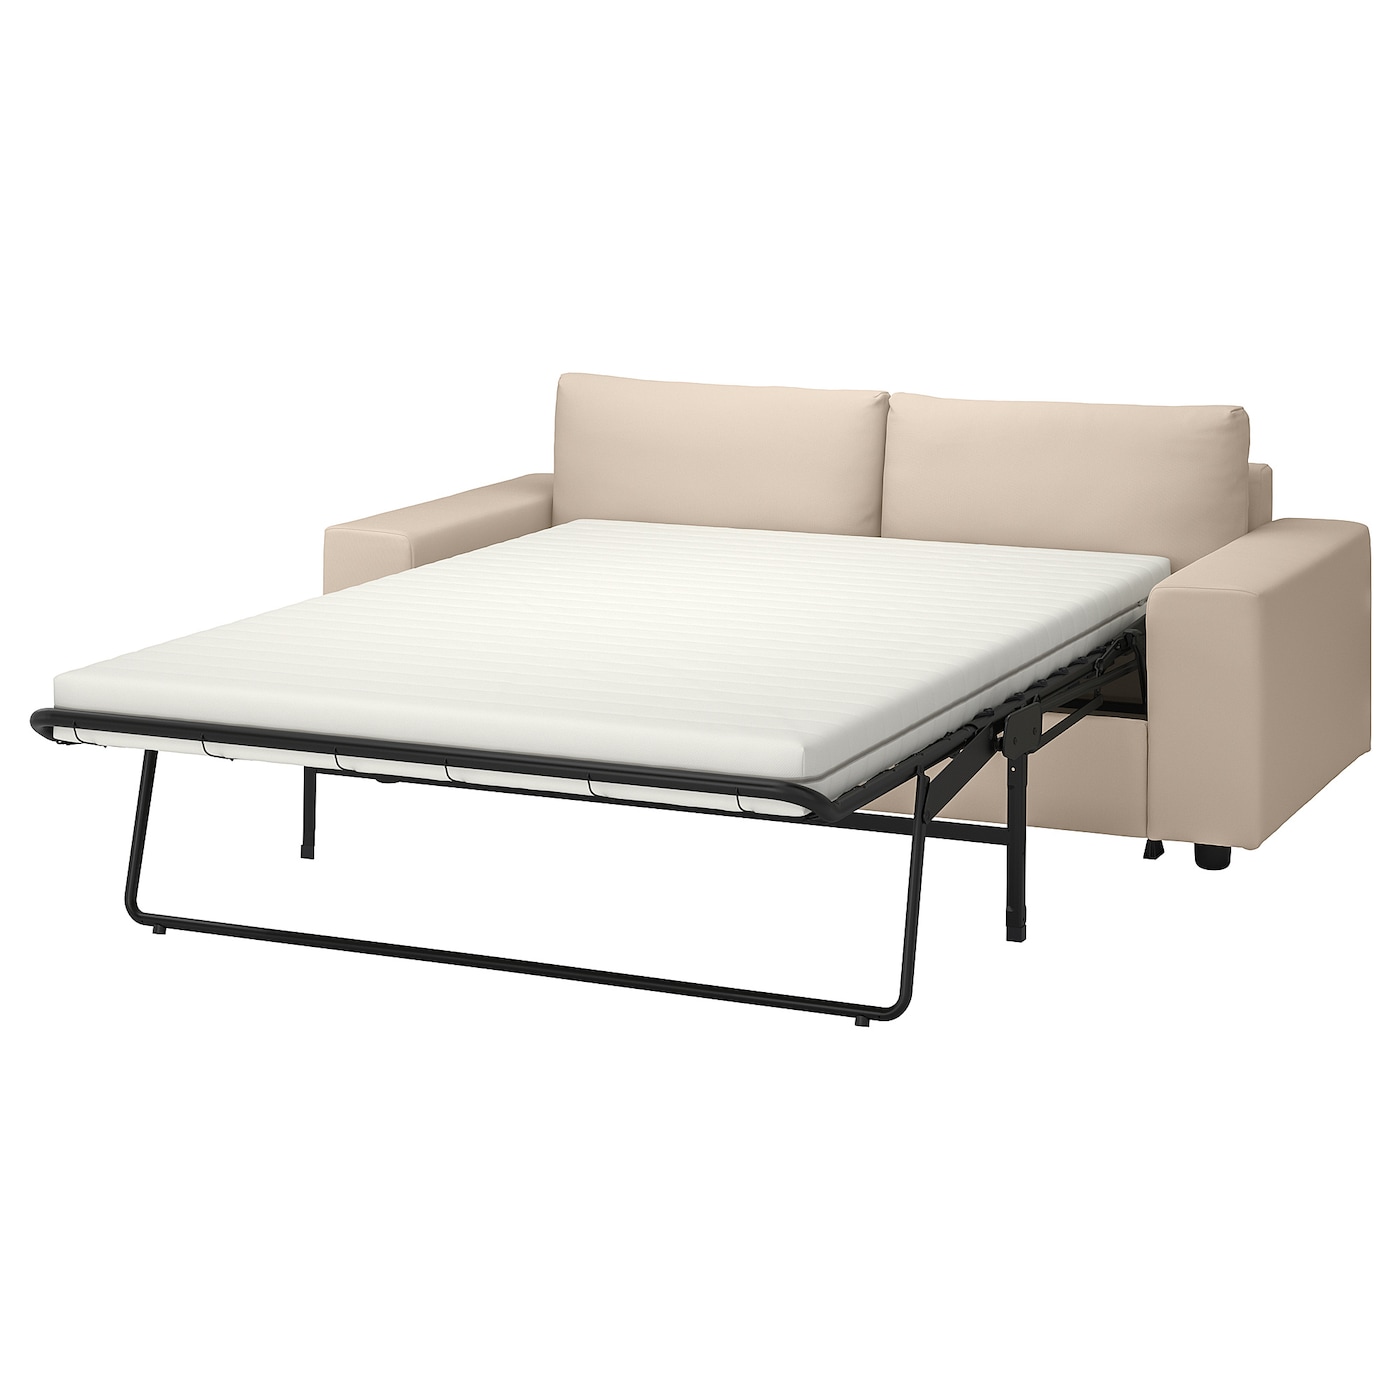 2-местный диван с широкими подлокотниками/Халларп средний серый - IKEA VIMLE, 98x204см, бежевый, ВИМЛЕ ИКЕА